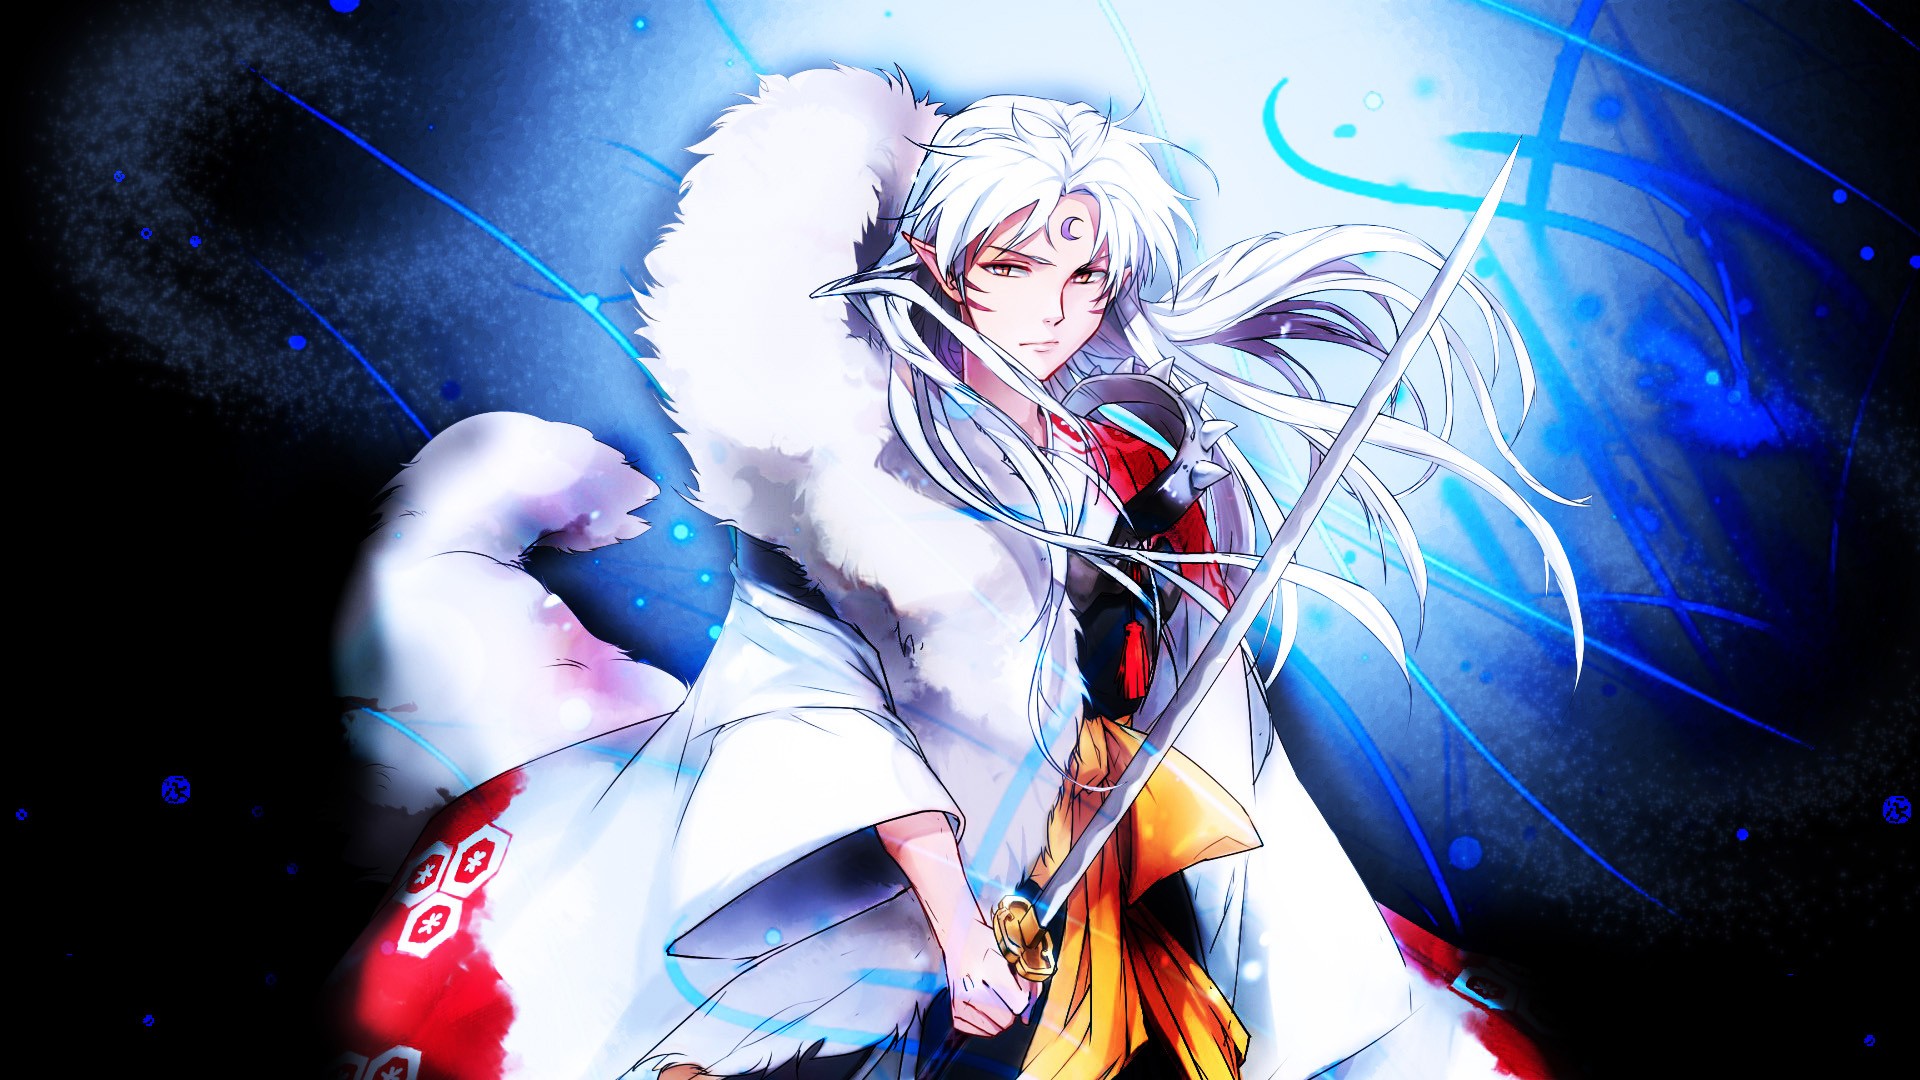 Anime Sesshomaru Sword White Hair Inuyasha 1920x1080